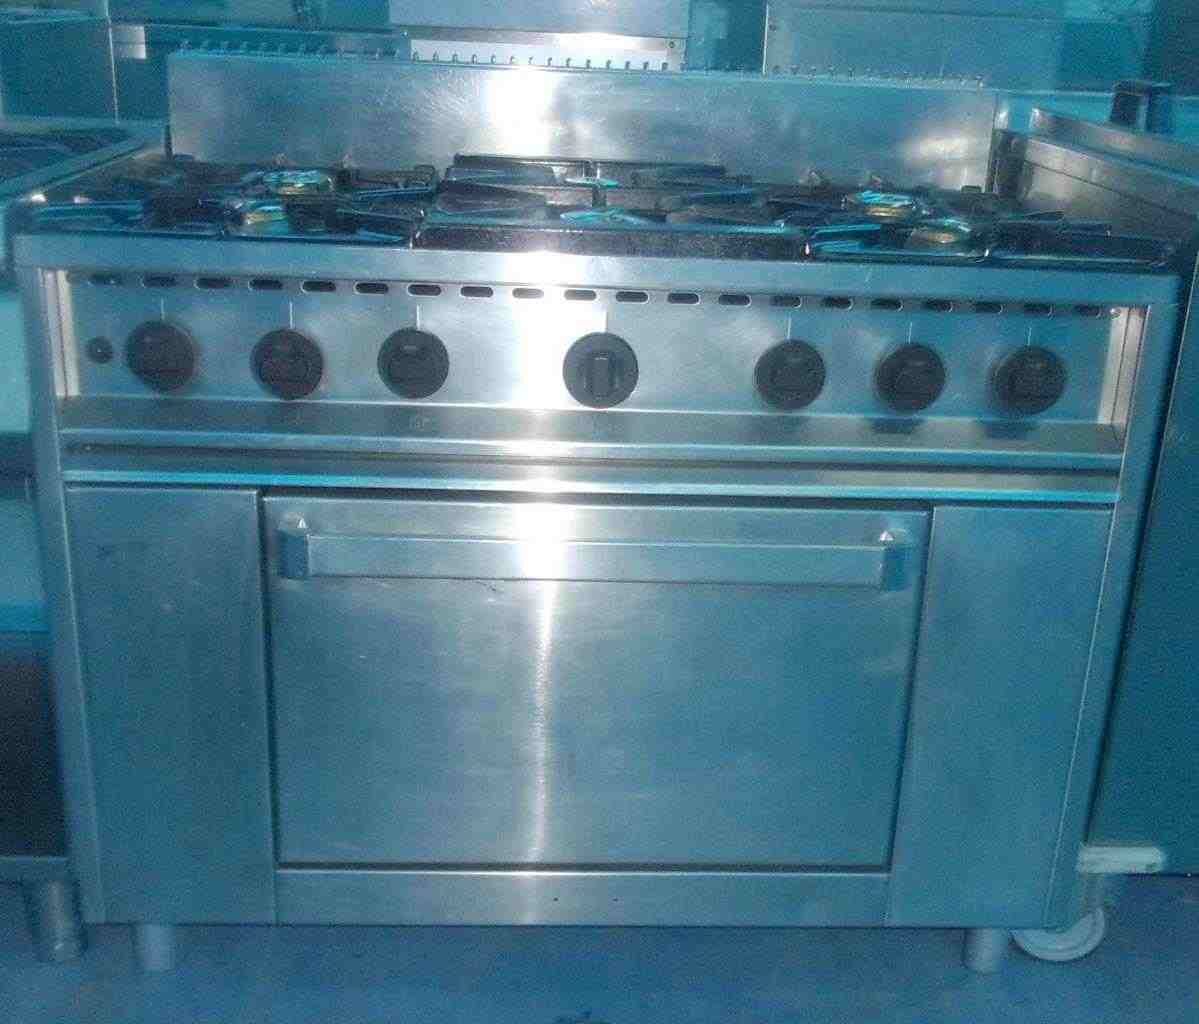 Cucina 6 fuochi con gas usata garantita